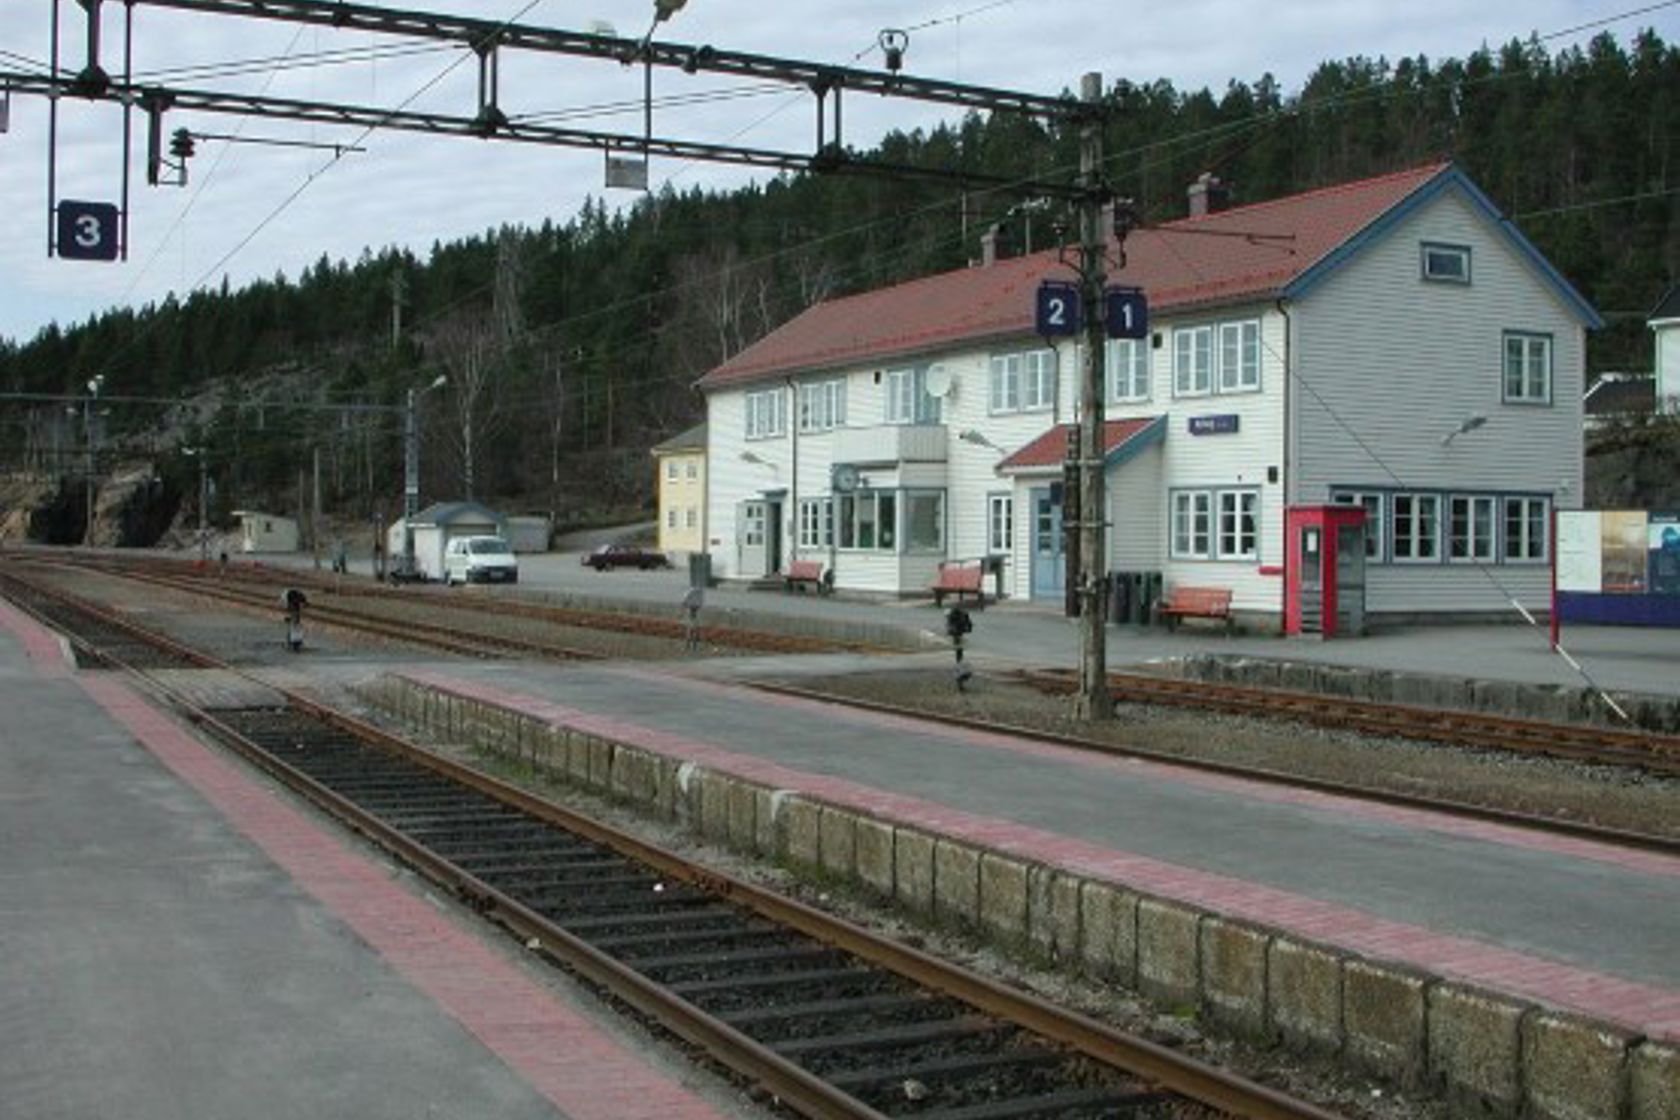 Exterior view of Nelaug station